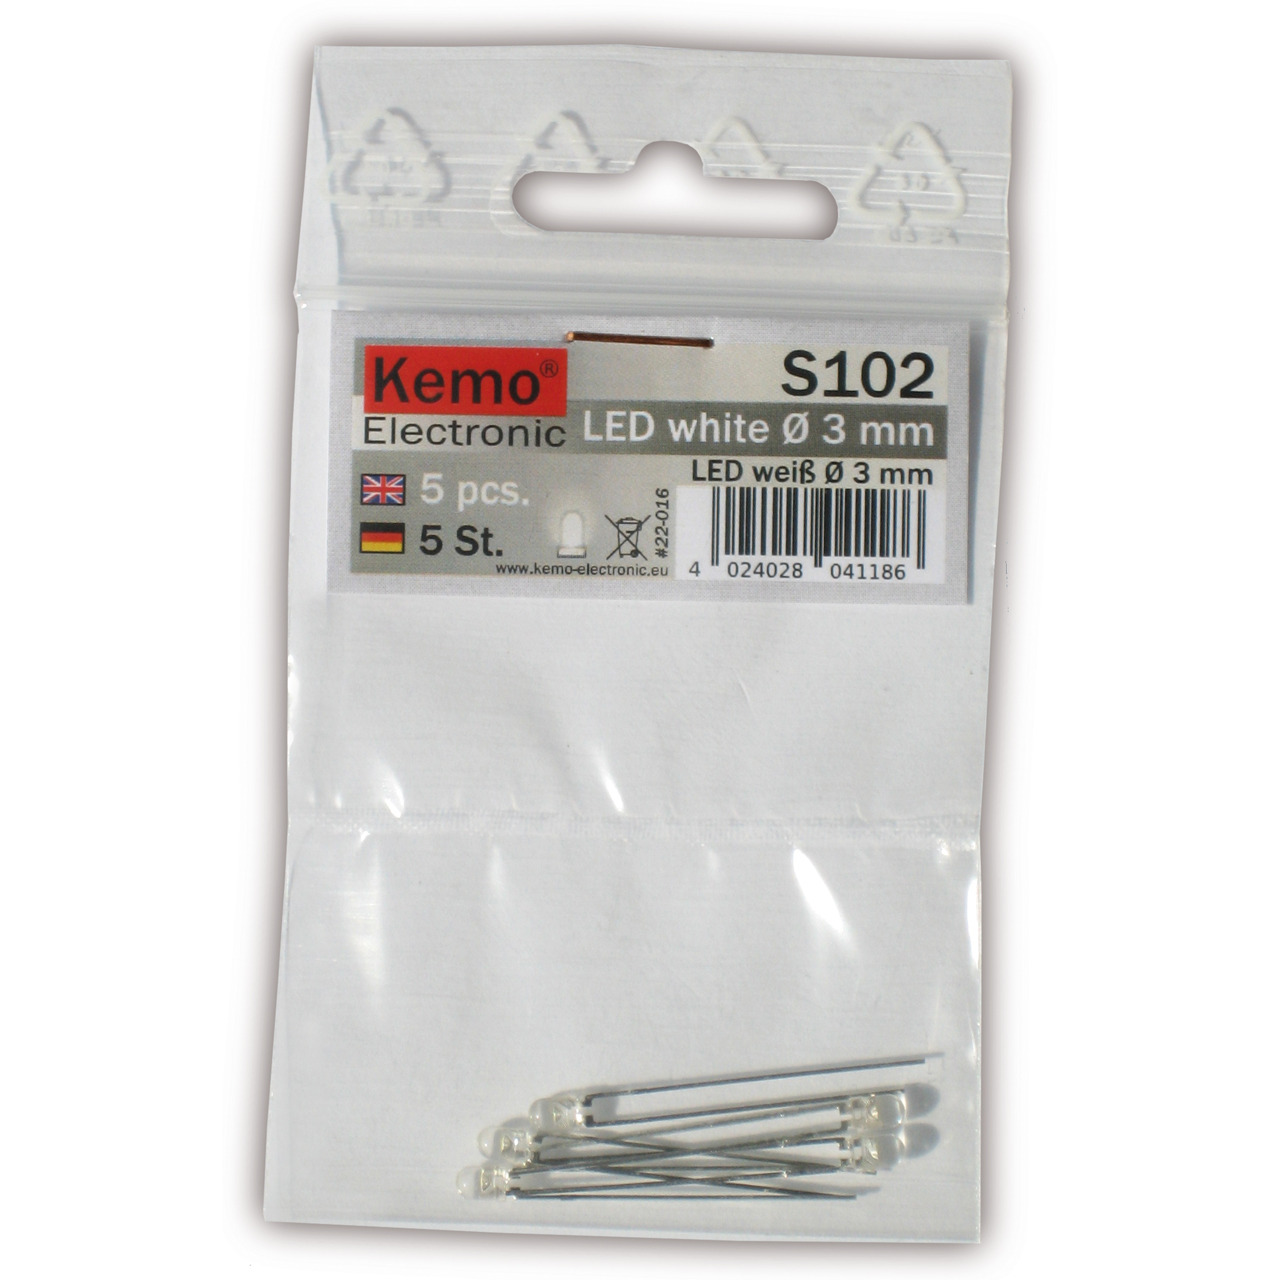 Kemo LED-Sortiment S102- weiss- 3 mm Durchmesser- 5 Stück unter Komponenten